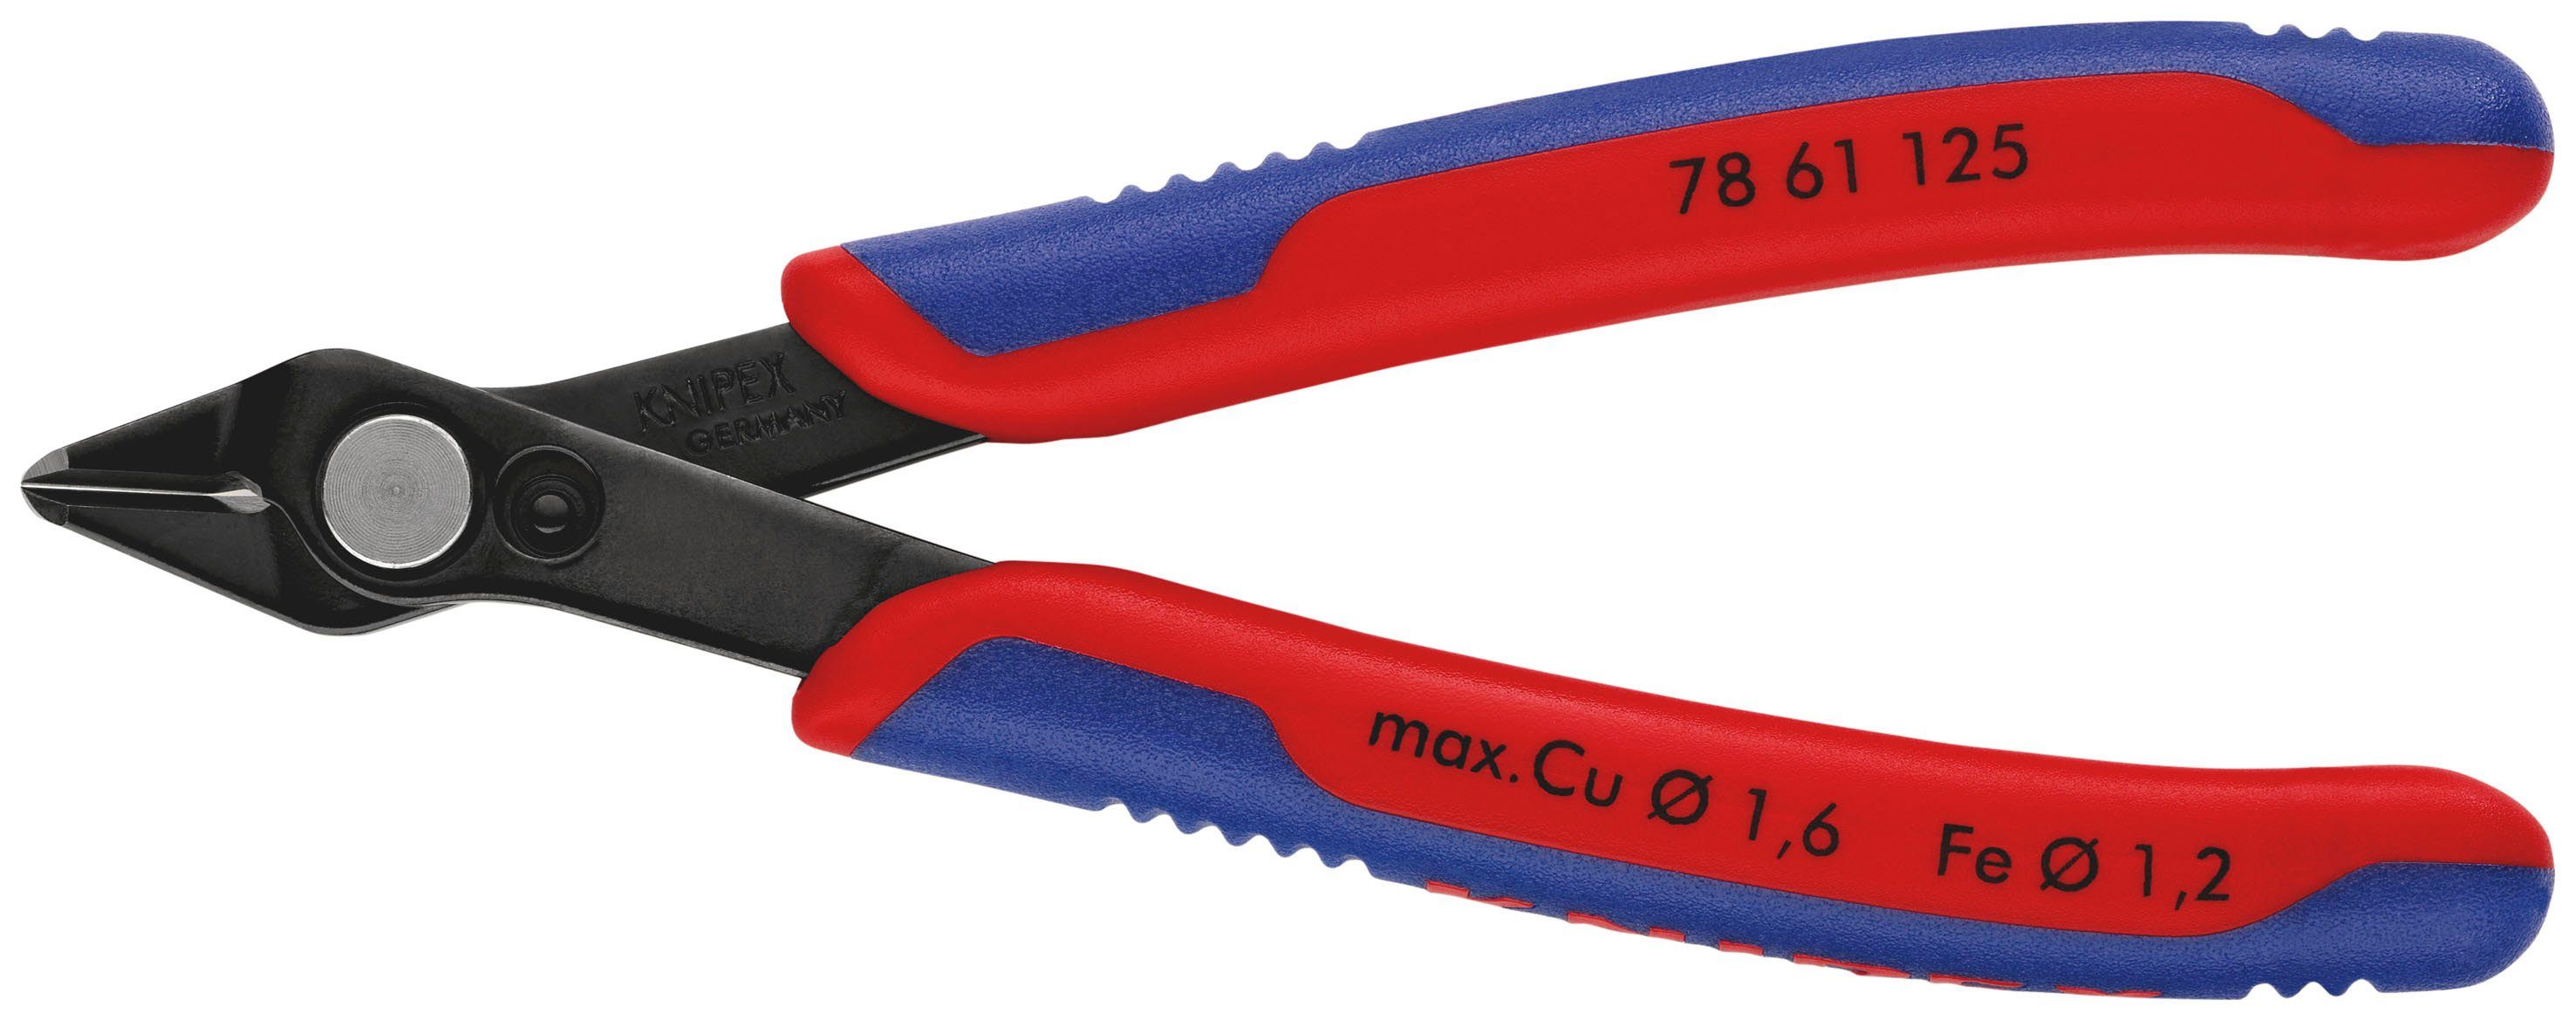 Knipex Seitenschneider 78 61 125 Electronic Super Knips®, 1-tlg., brüniert, mit Mehrkomponenten-Hüllen 125 mm